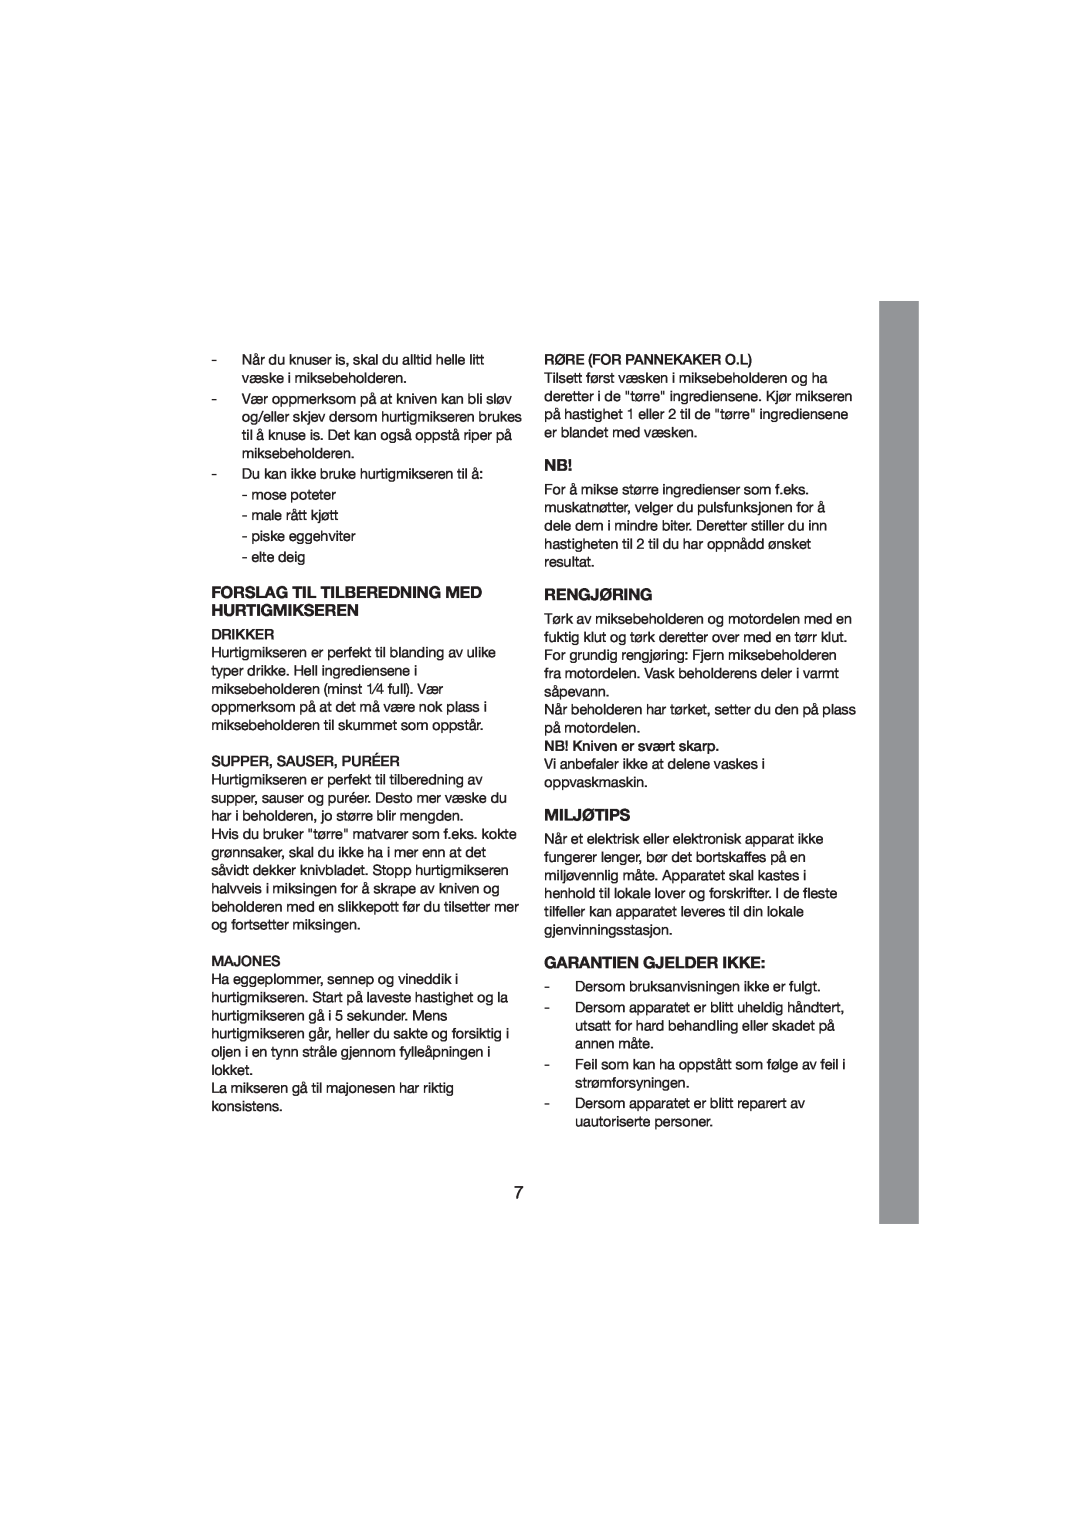 Melissa 246-011 manual Forslag Til Tilberedning Med Hurtigmikseren, Rengjøring, Miljøtips, Garantien Gjelder Ikke 